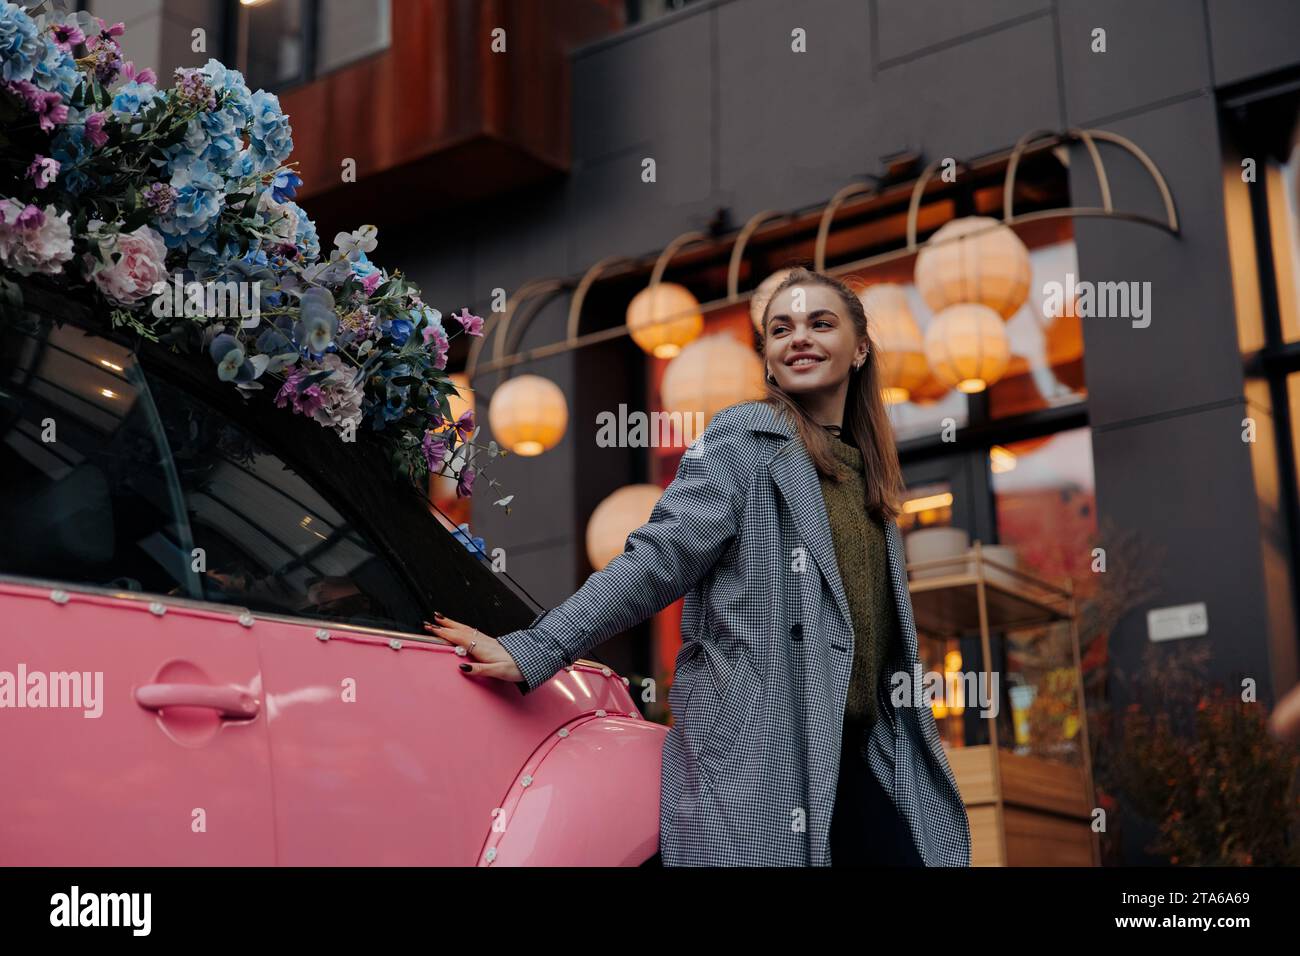 Junge glückliche lächelnde Frau, die neben einem rosa Auto steht, das mit Blumengirlanden auf der Stadtstraße vor dem Hintergrund des Gebäudes dekoriert ist. Nahansicht. Stockfoto